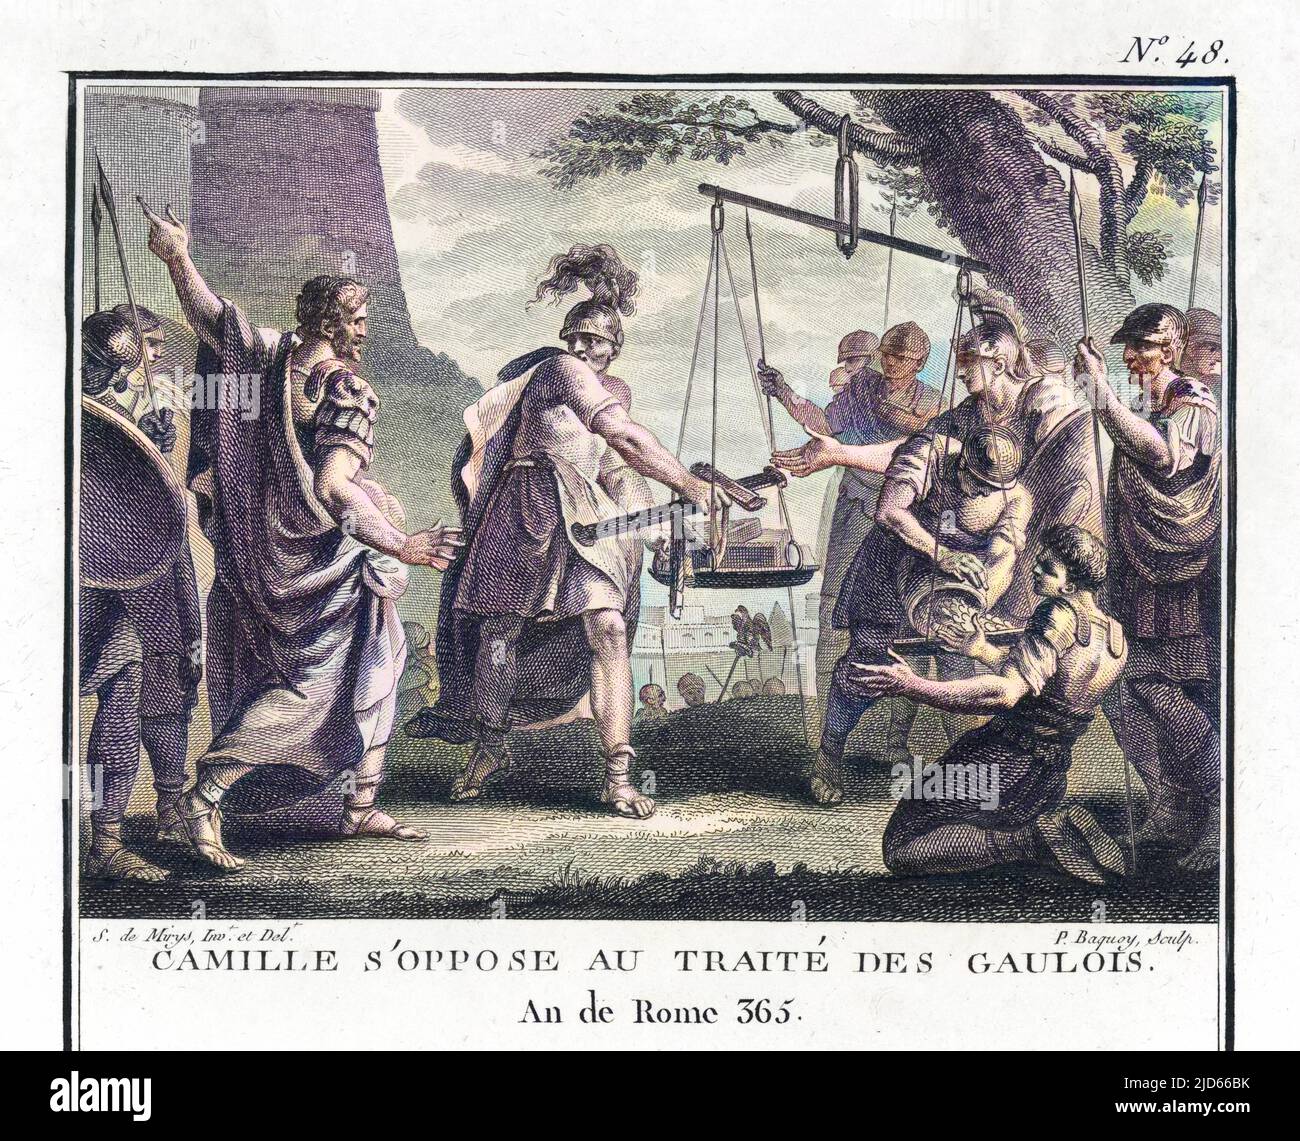 Marcus Furius Camillus, consul romain, s'oppose à la conclusion d'un traité avec les Gaulois. Version colorisée de : 10006589 Date : 390 av. J.-C. Banque D'Images